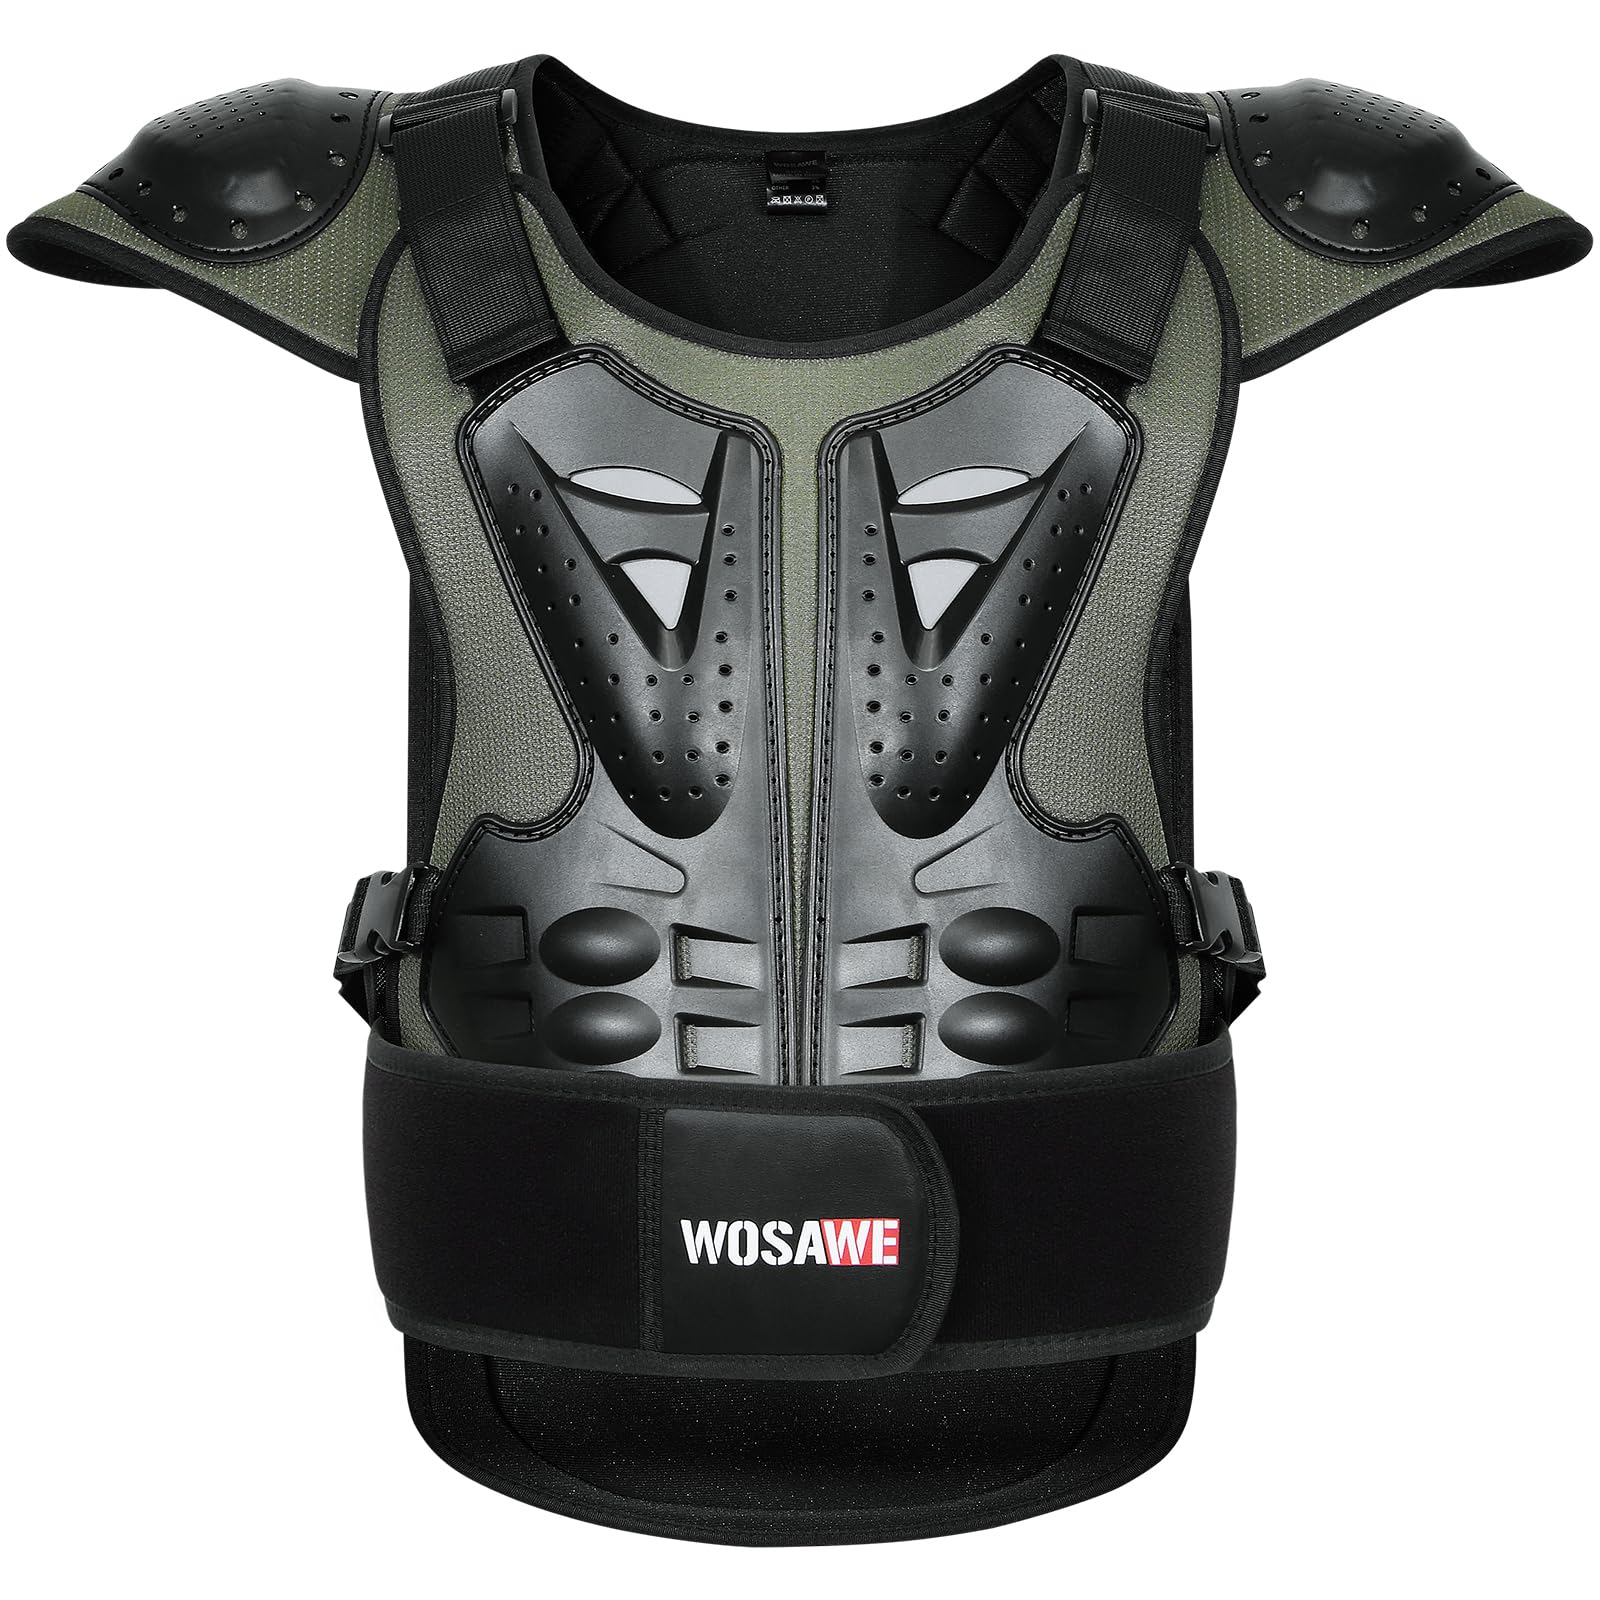 WOSAWE Motorrad Schutz Jacke für Erwachsene, Brustpanzer Racing Guard Rückenprotektoren Schutzausrüstung für Riding Skating Roller Skifahren Snowboard (15 Grün, S) von WOSAWE